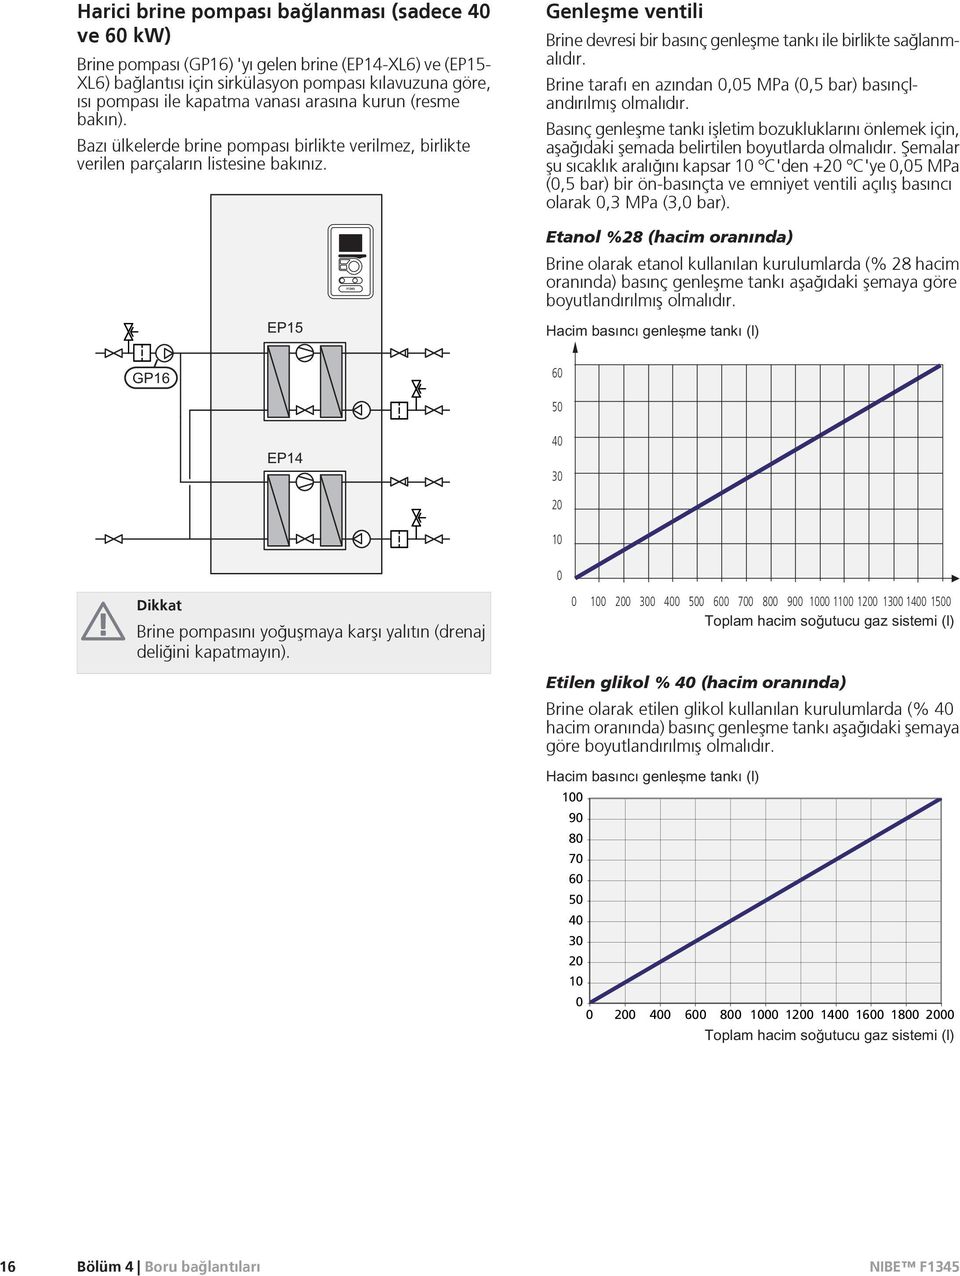 Genleºme ventili Brine devresi bir basınç genleºme tankı ile birlikte sağlanmalıdır. Brine tarafı en azından 0,05 MPa (0,5 bar) basınçlandırılmıº olmalıdır.